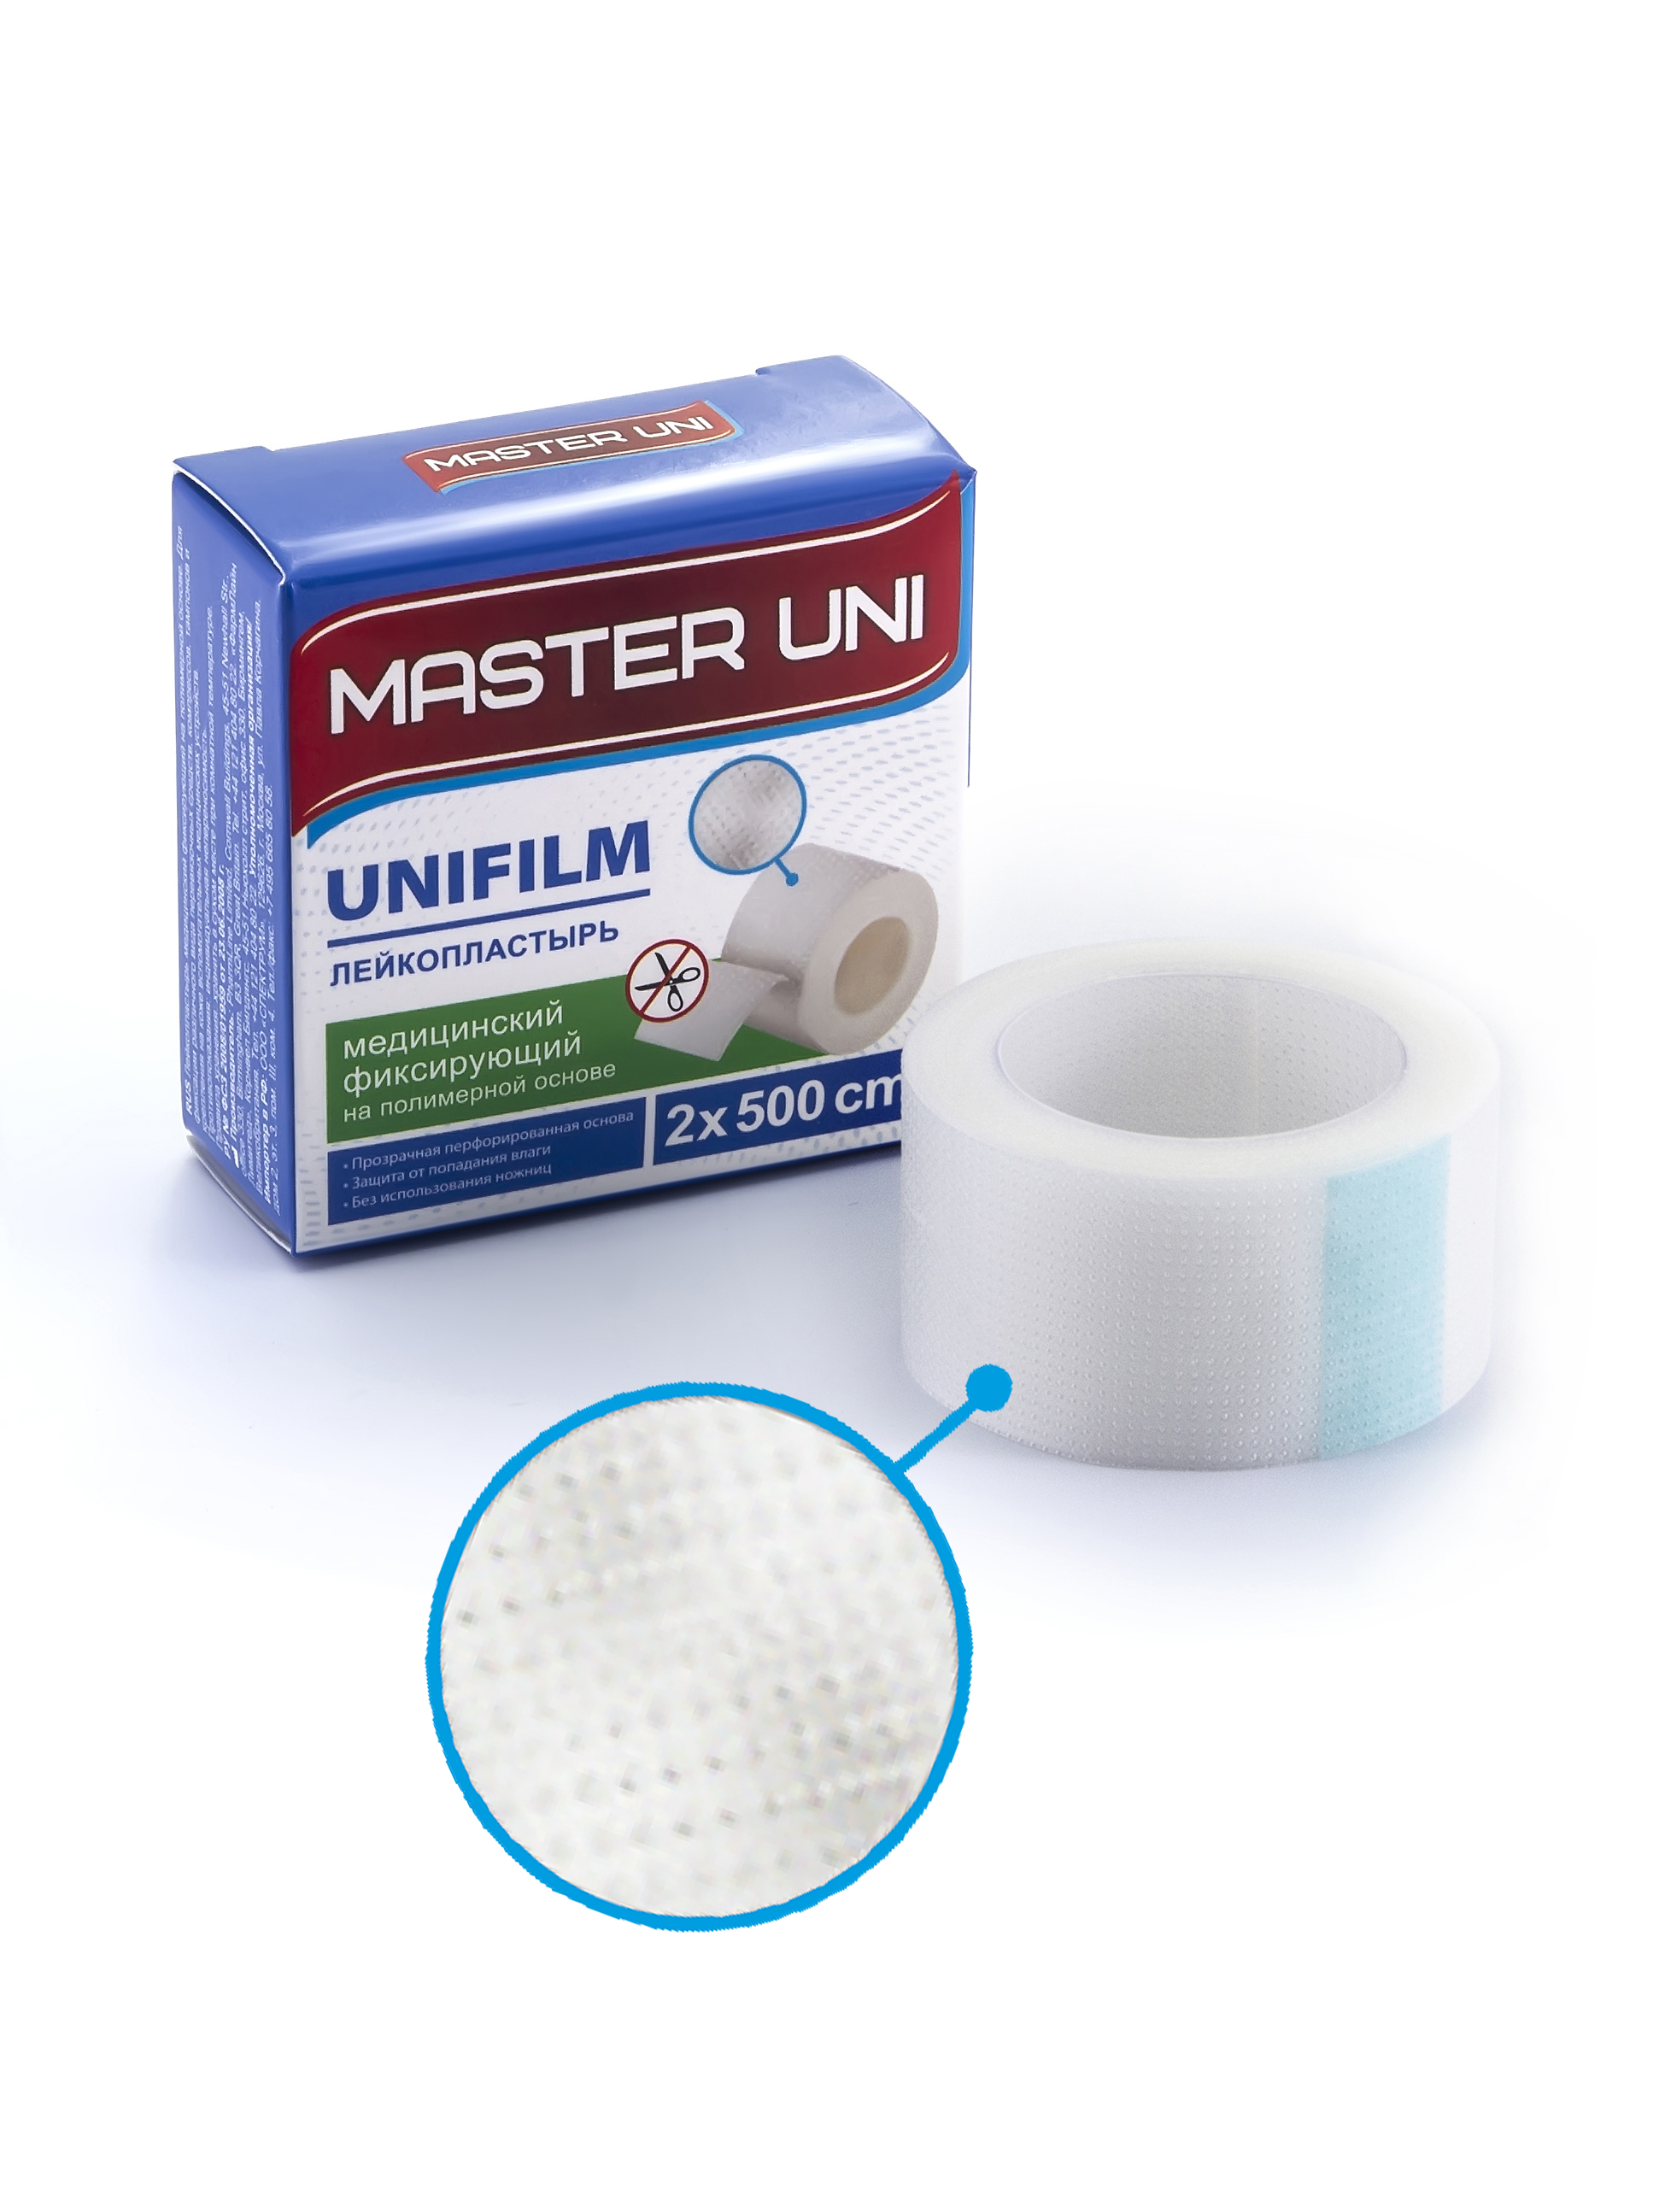 Купить MASTER UNI UNIFILM Лейкопластырь 2 х 500 см на полимерной основе, Пластырь Master Uni Unifilm фиксирующий на полимерной основе 2 х 500 см